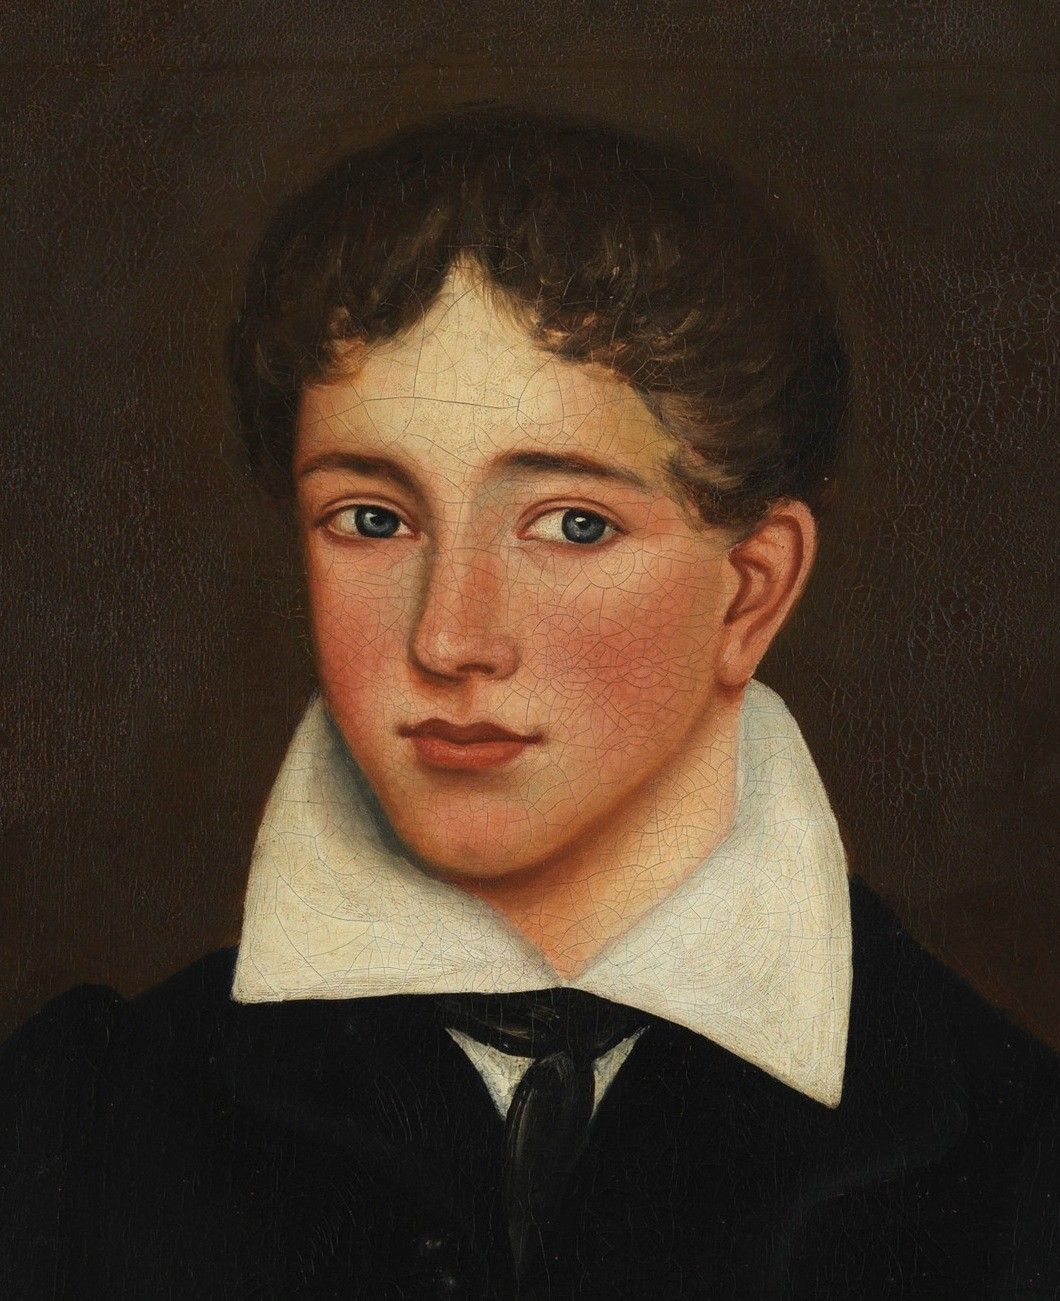 Folk Art Portrait of A Young Boy